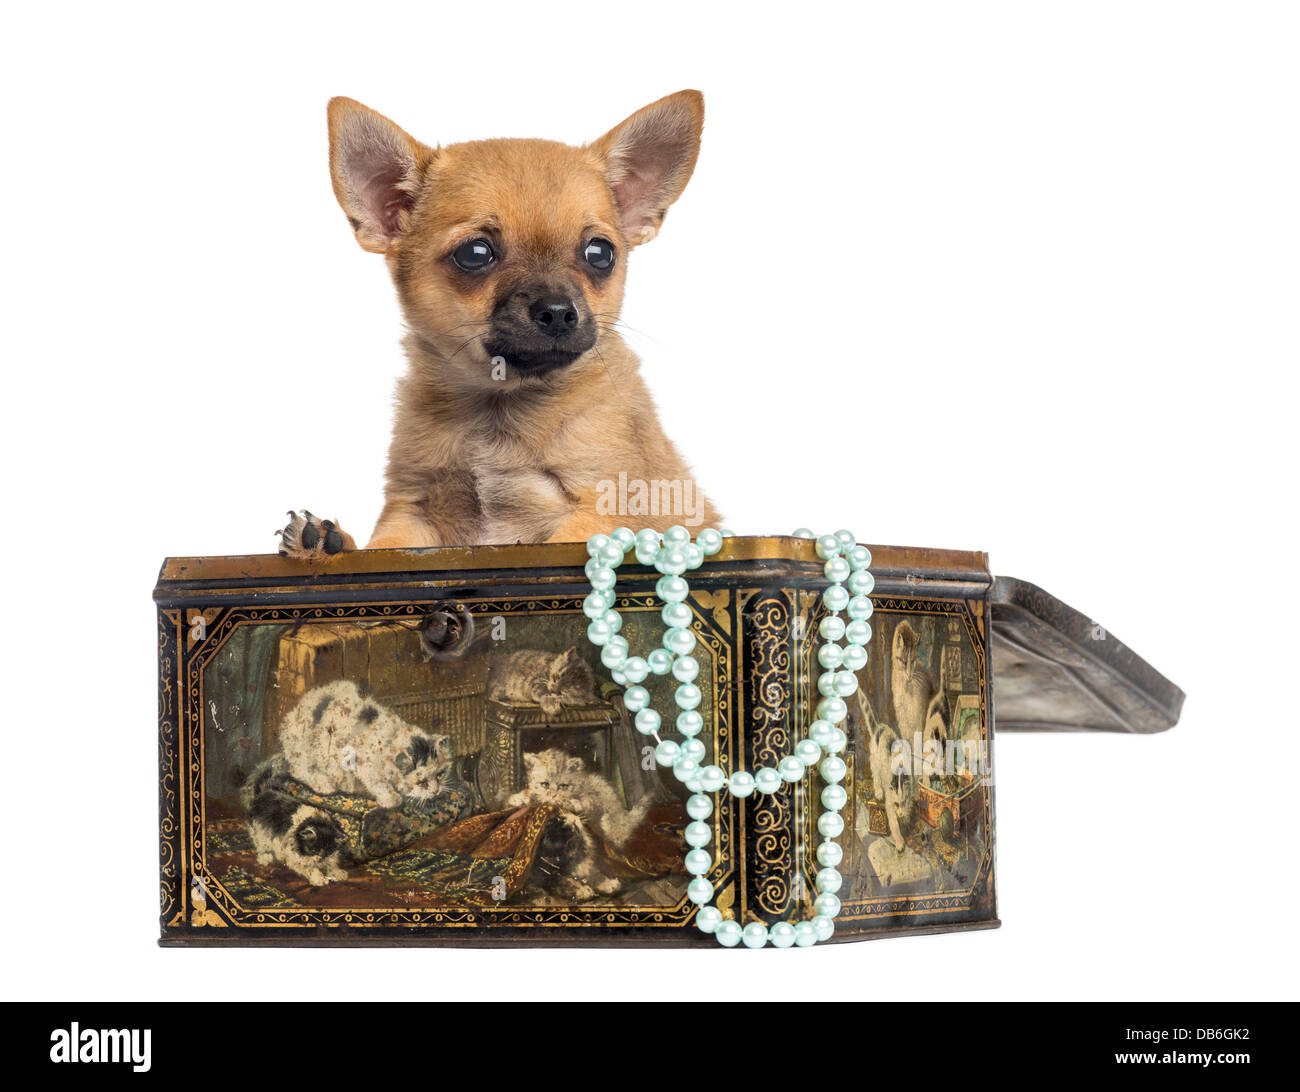 Chihuahua cucciolo, 4 mesi di età, nella casella vintage contro uno sfondo bianco Foto Stock